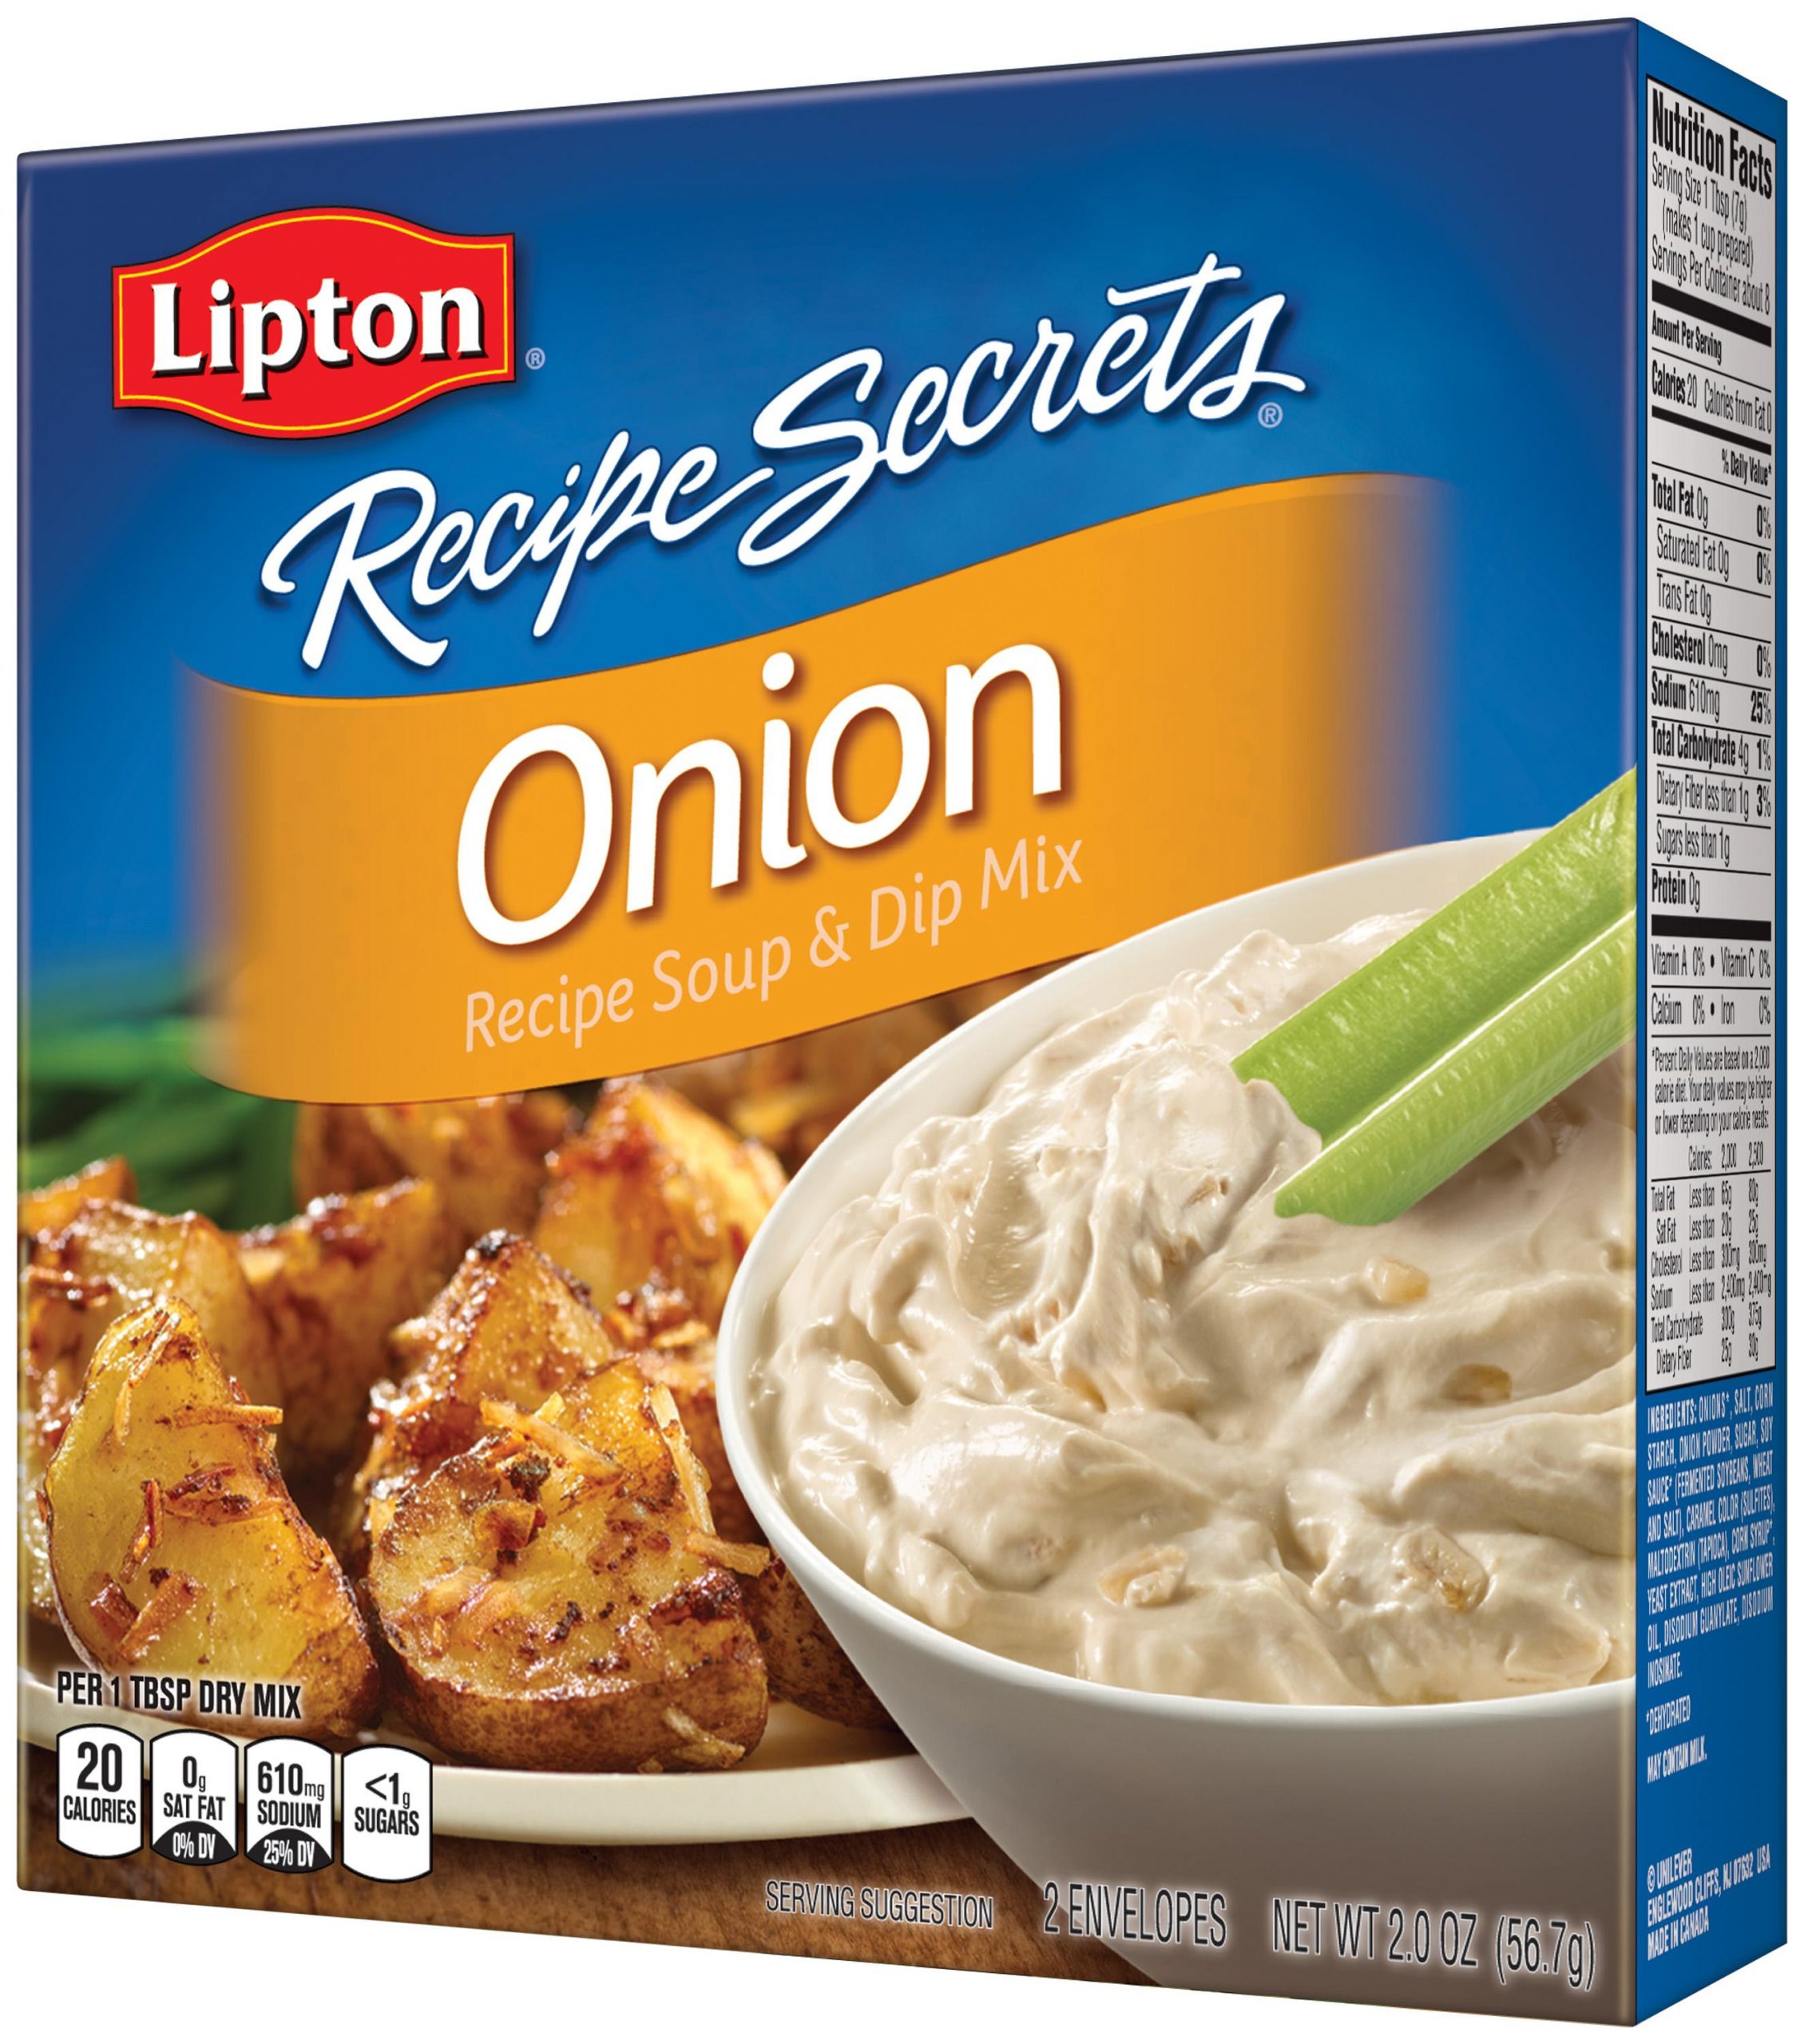 Amazon.com: Lipton Recipe Secrets Soup and Dip Mix, Onion ...